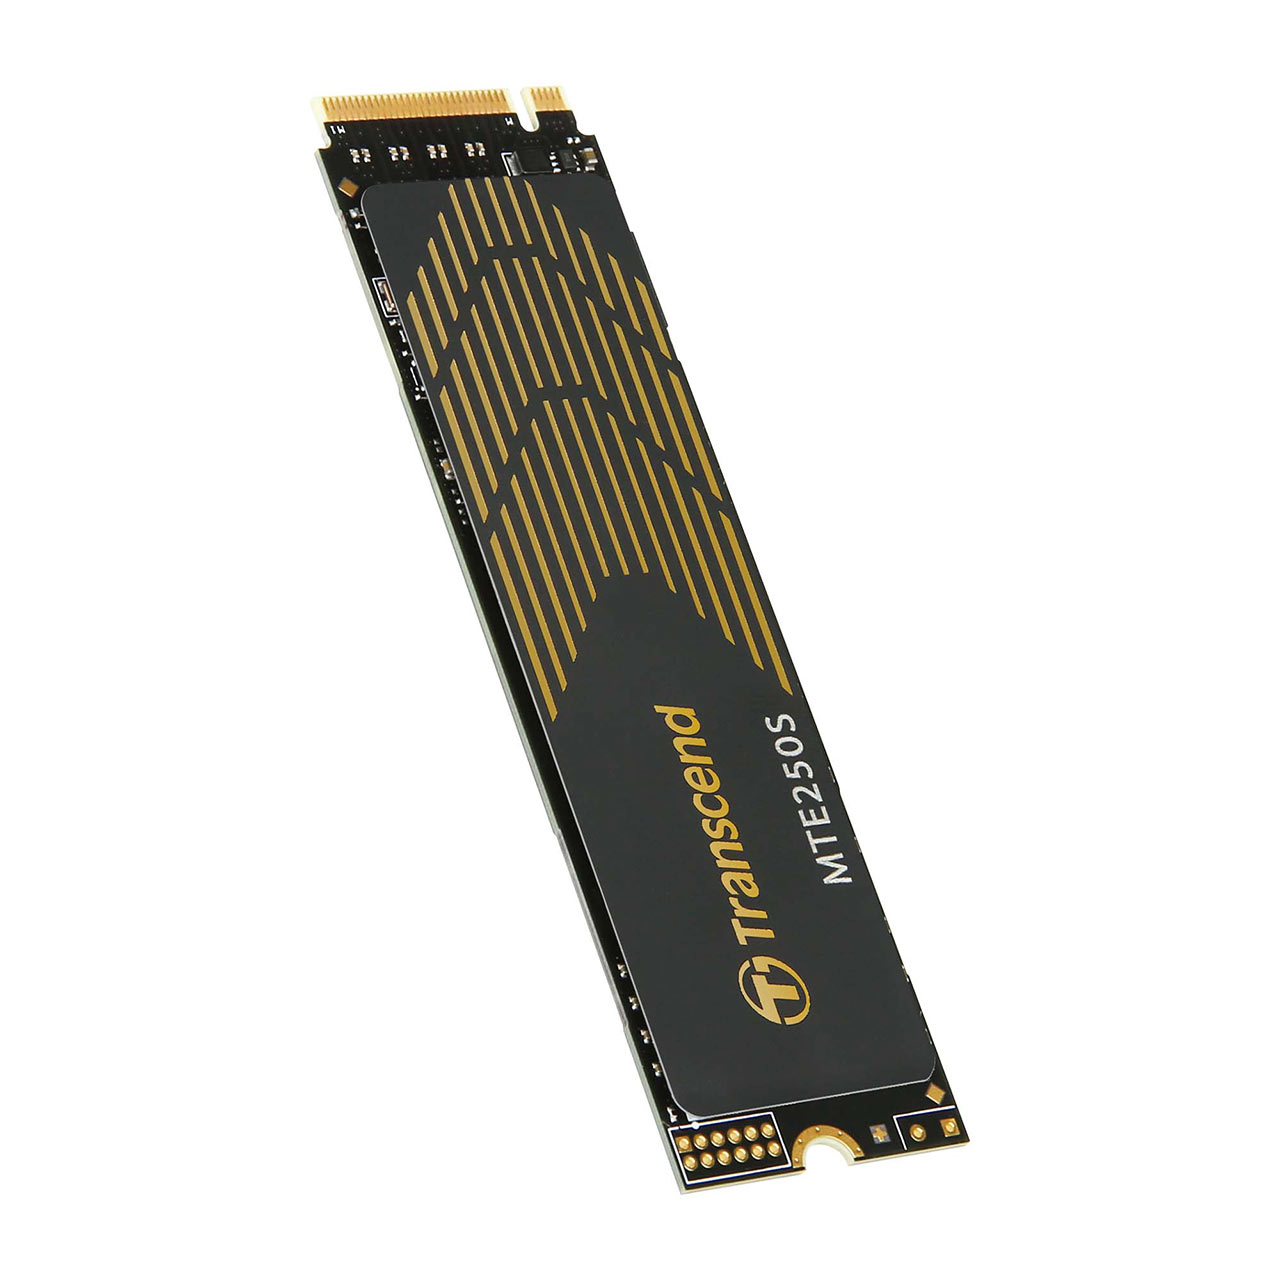 M.2 SSD 500GB NVMe 1.3準拠 PCIe Gen3 ×4 3D NAND TS500GMTE110Q トランセンド製 Transcend ネコポス対応